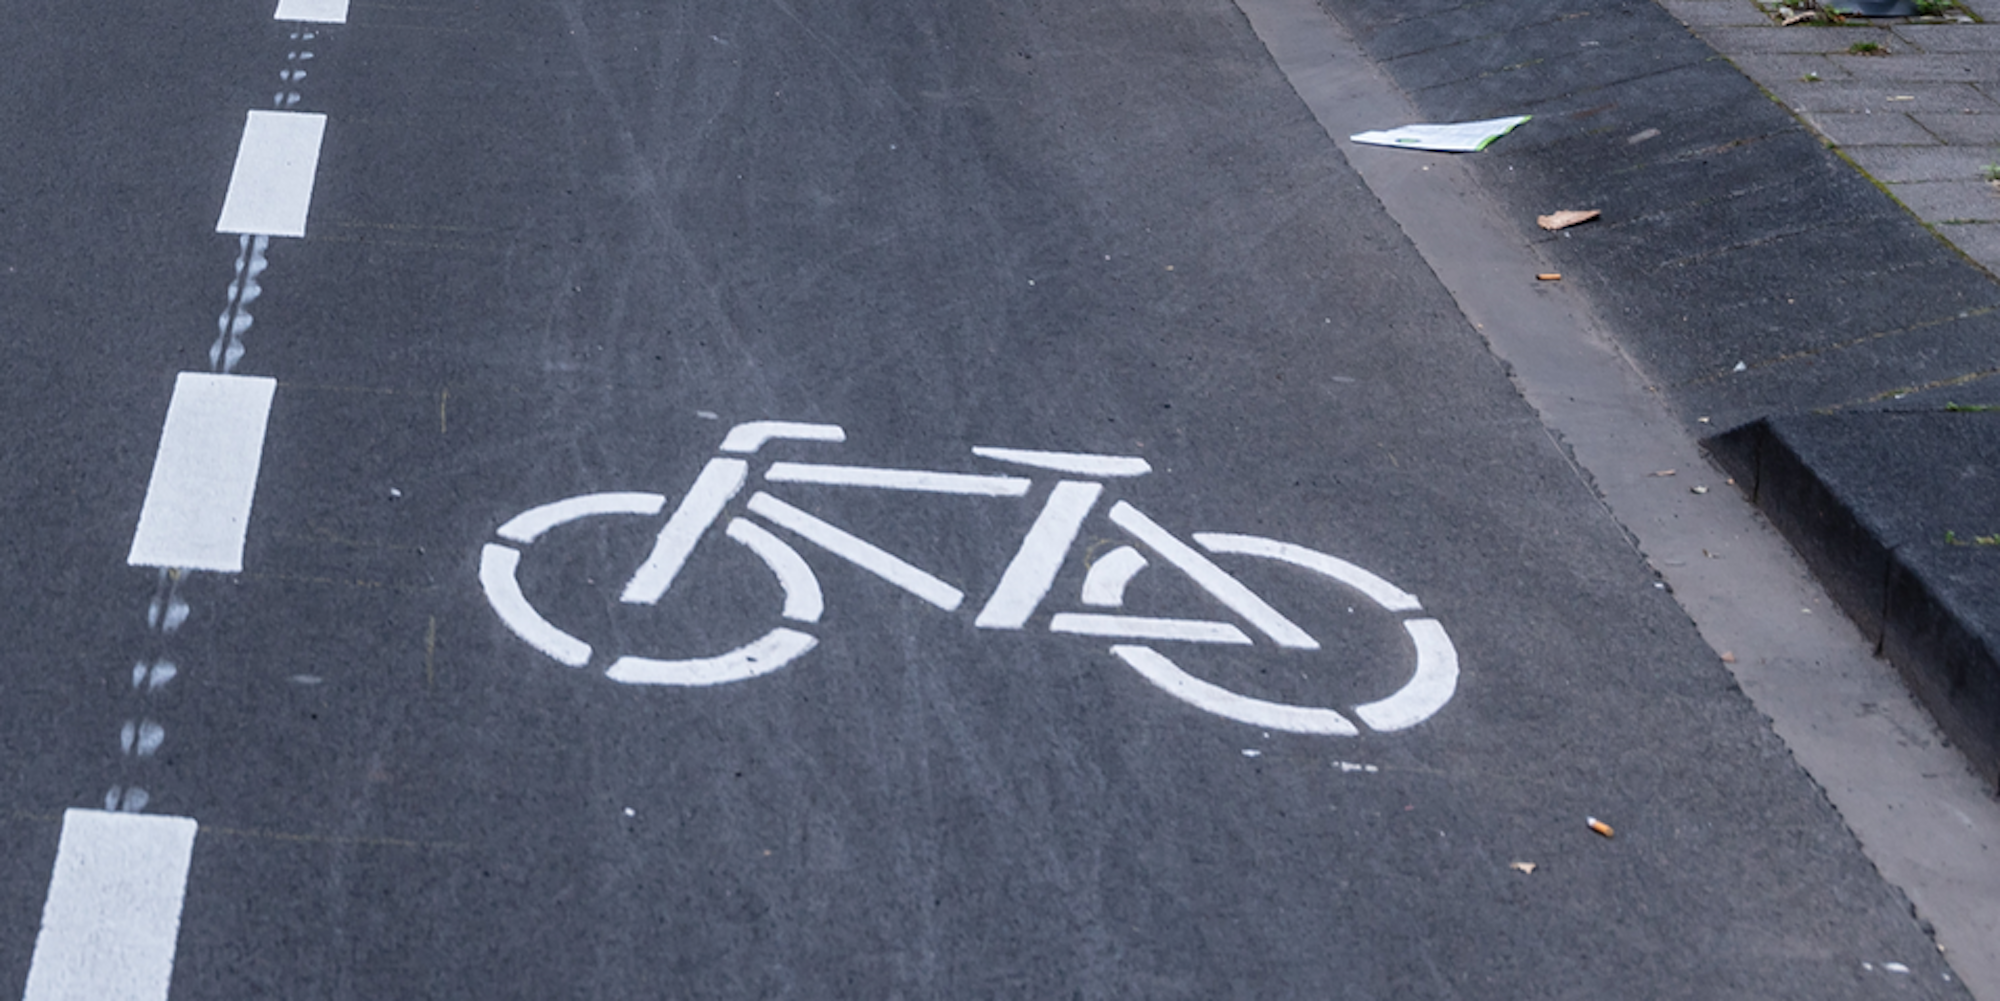 Fahrradstreifen Symbolbild